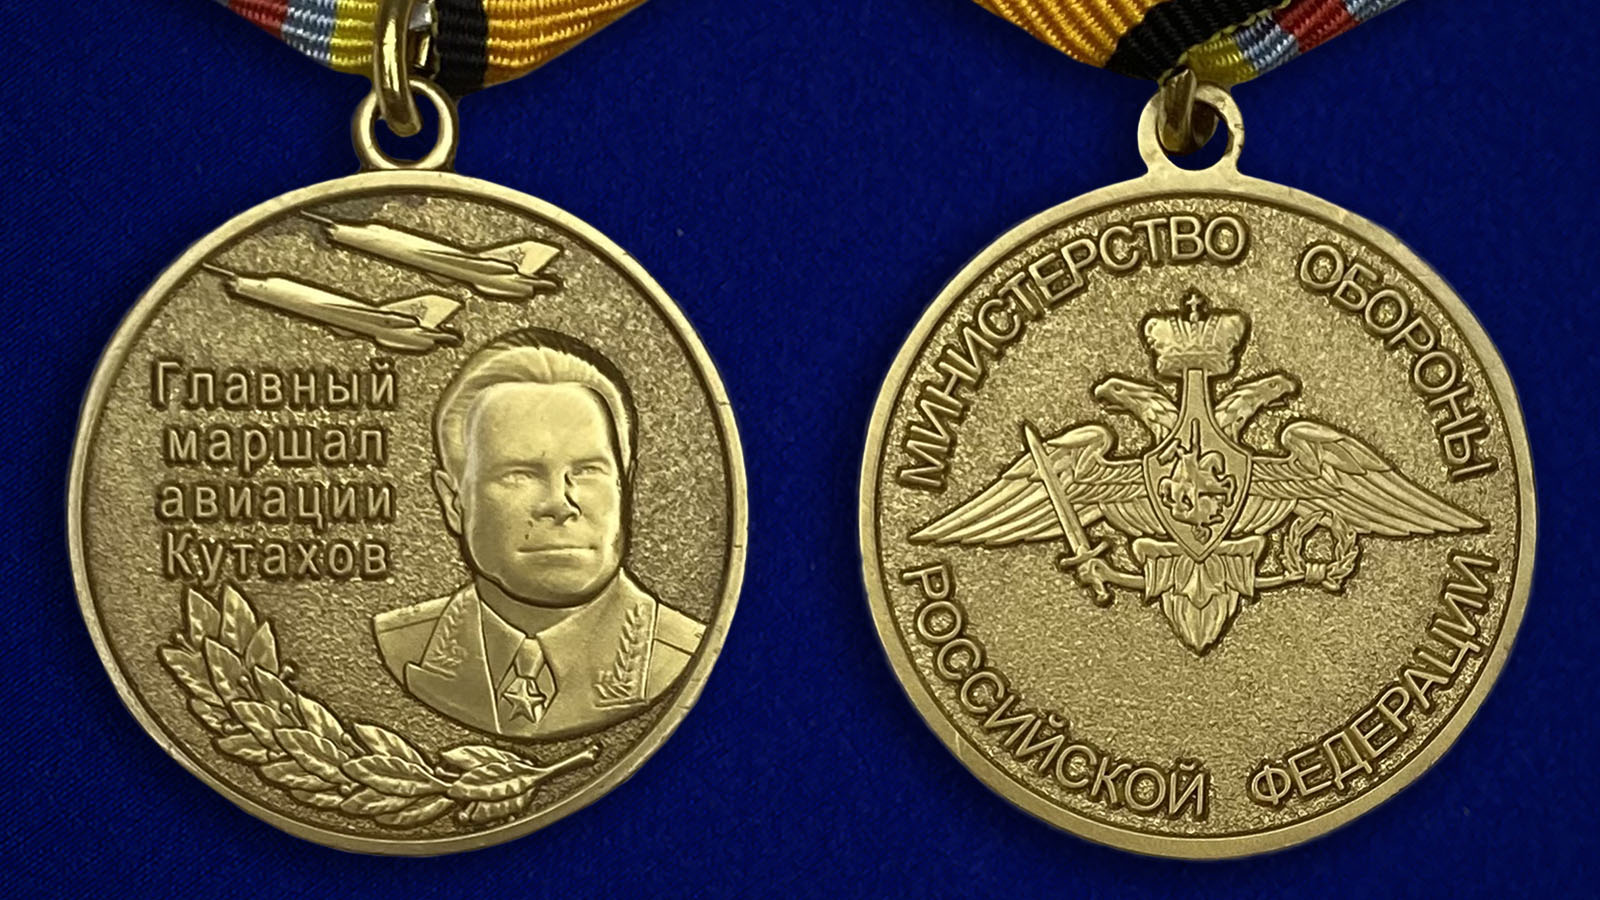 Медаль "Маршал Кутахов" с удобной доставкой